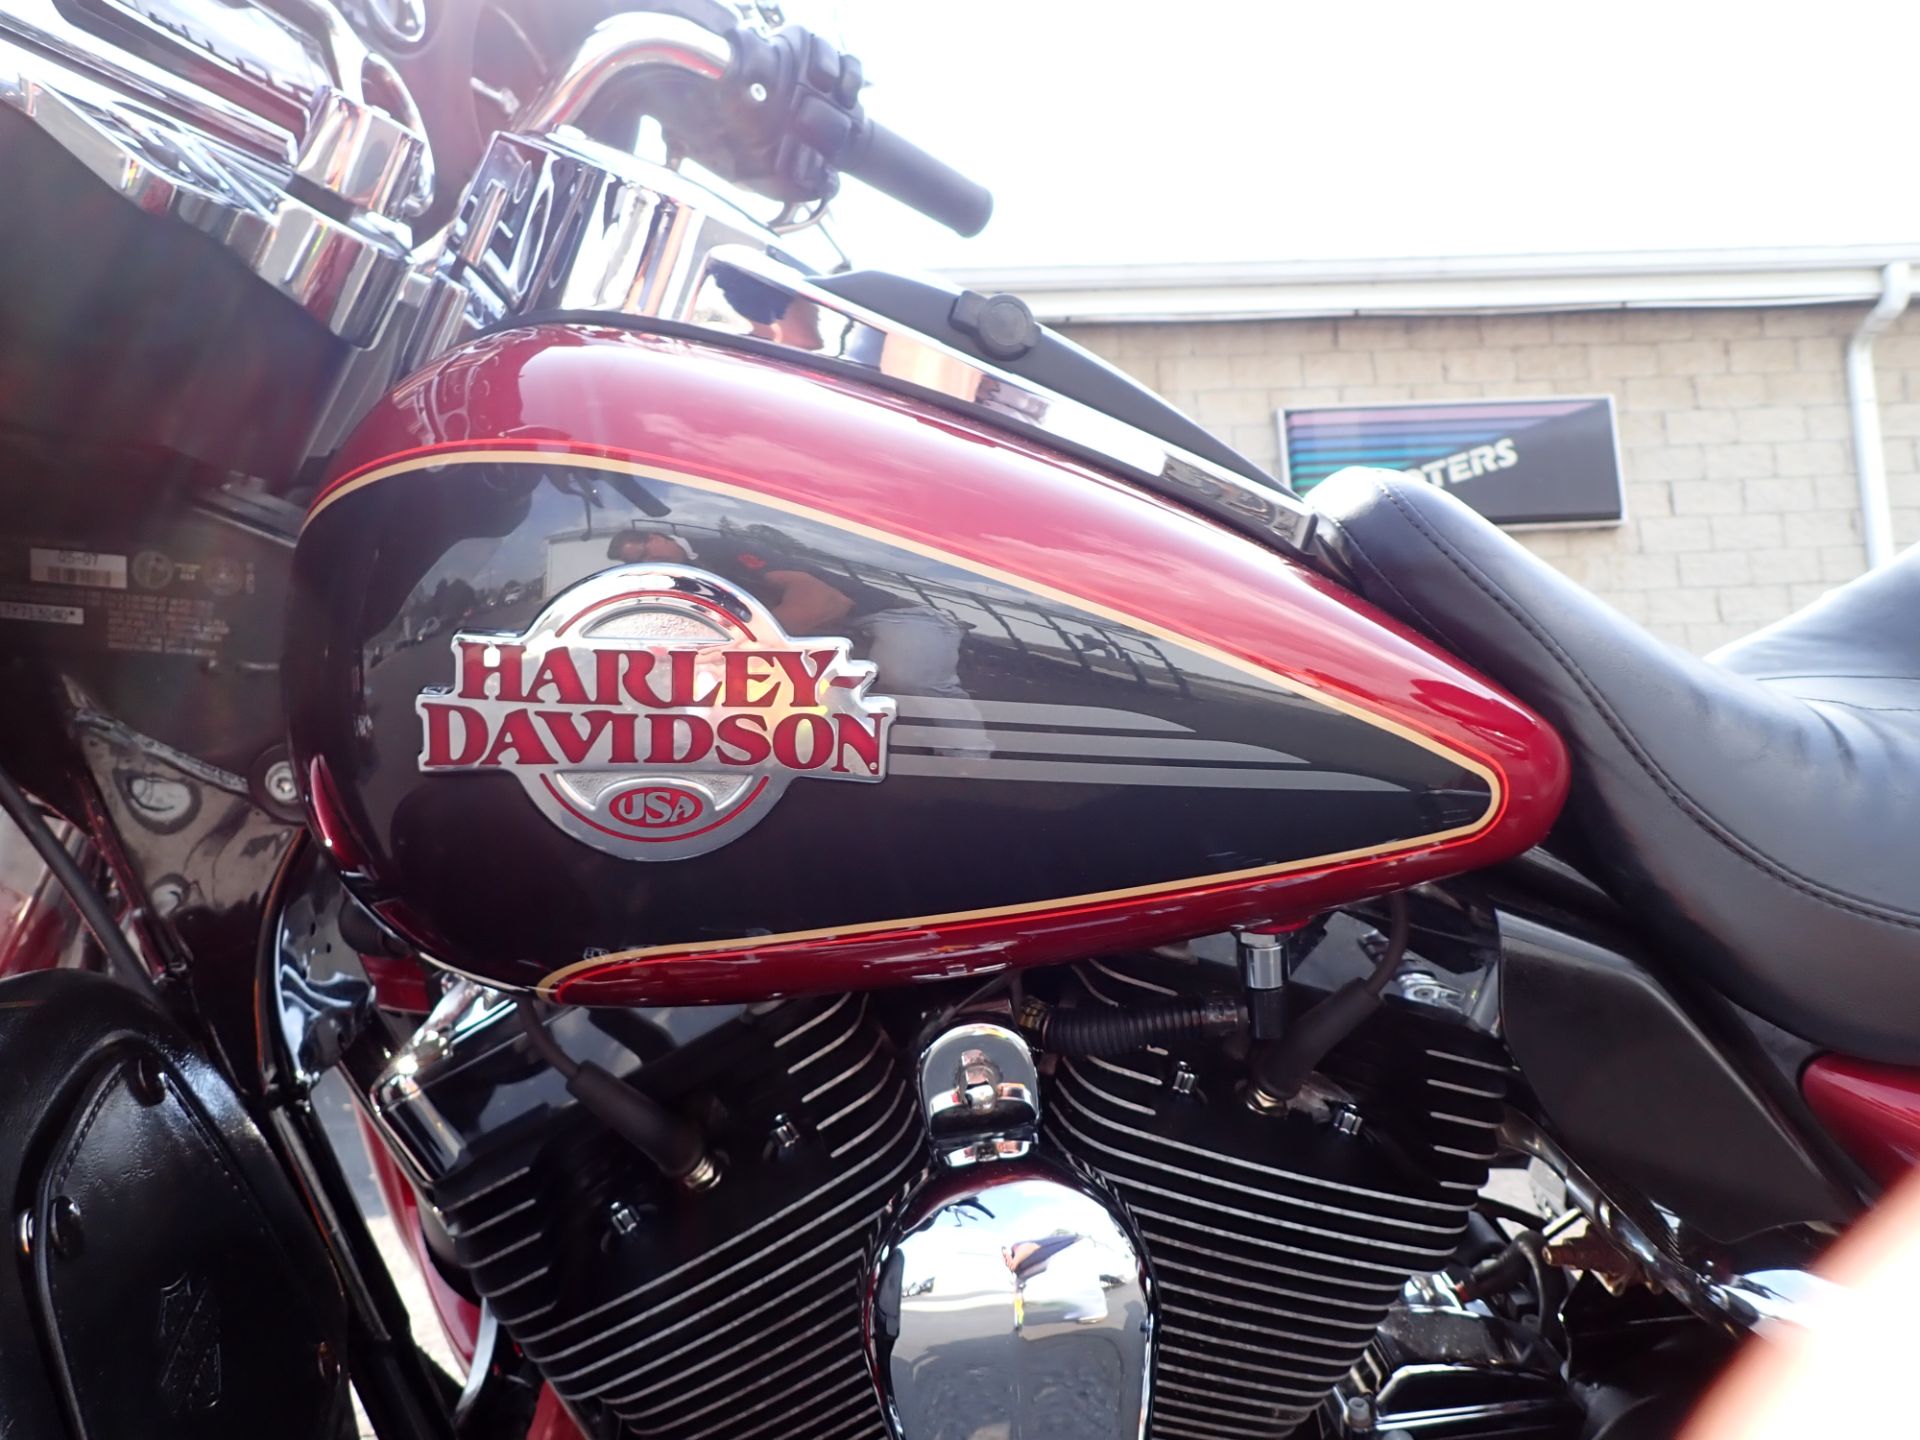 2007 Harley-Davidson Ultra Classic® Electra Glide® in Massillon, Ohio - Photo 9